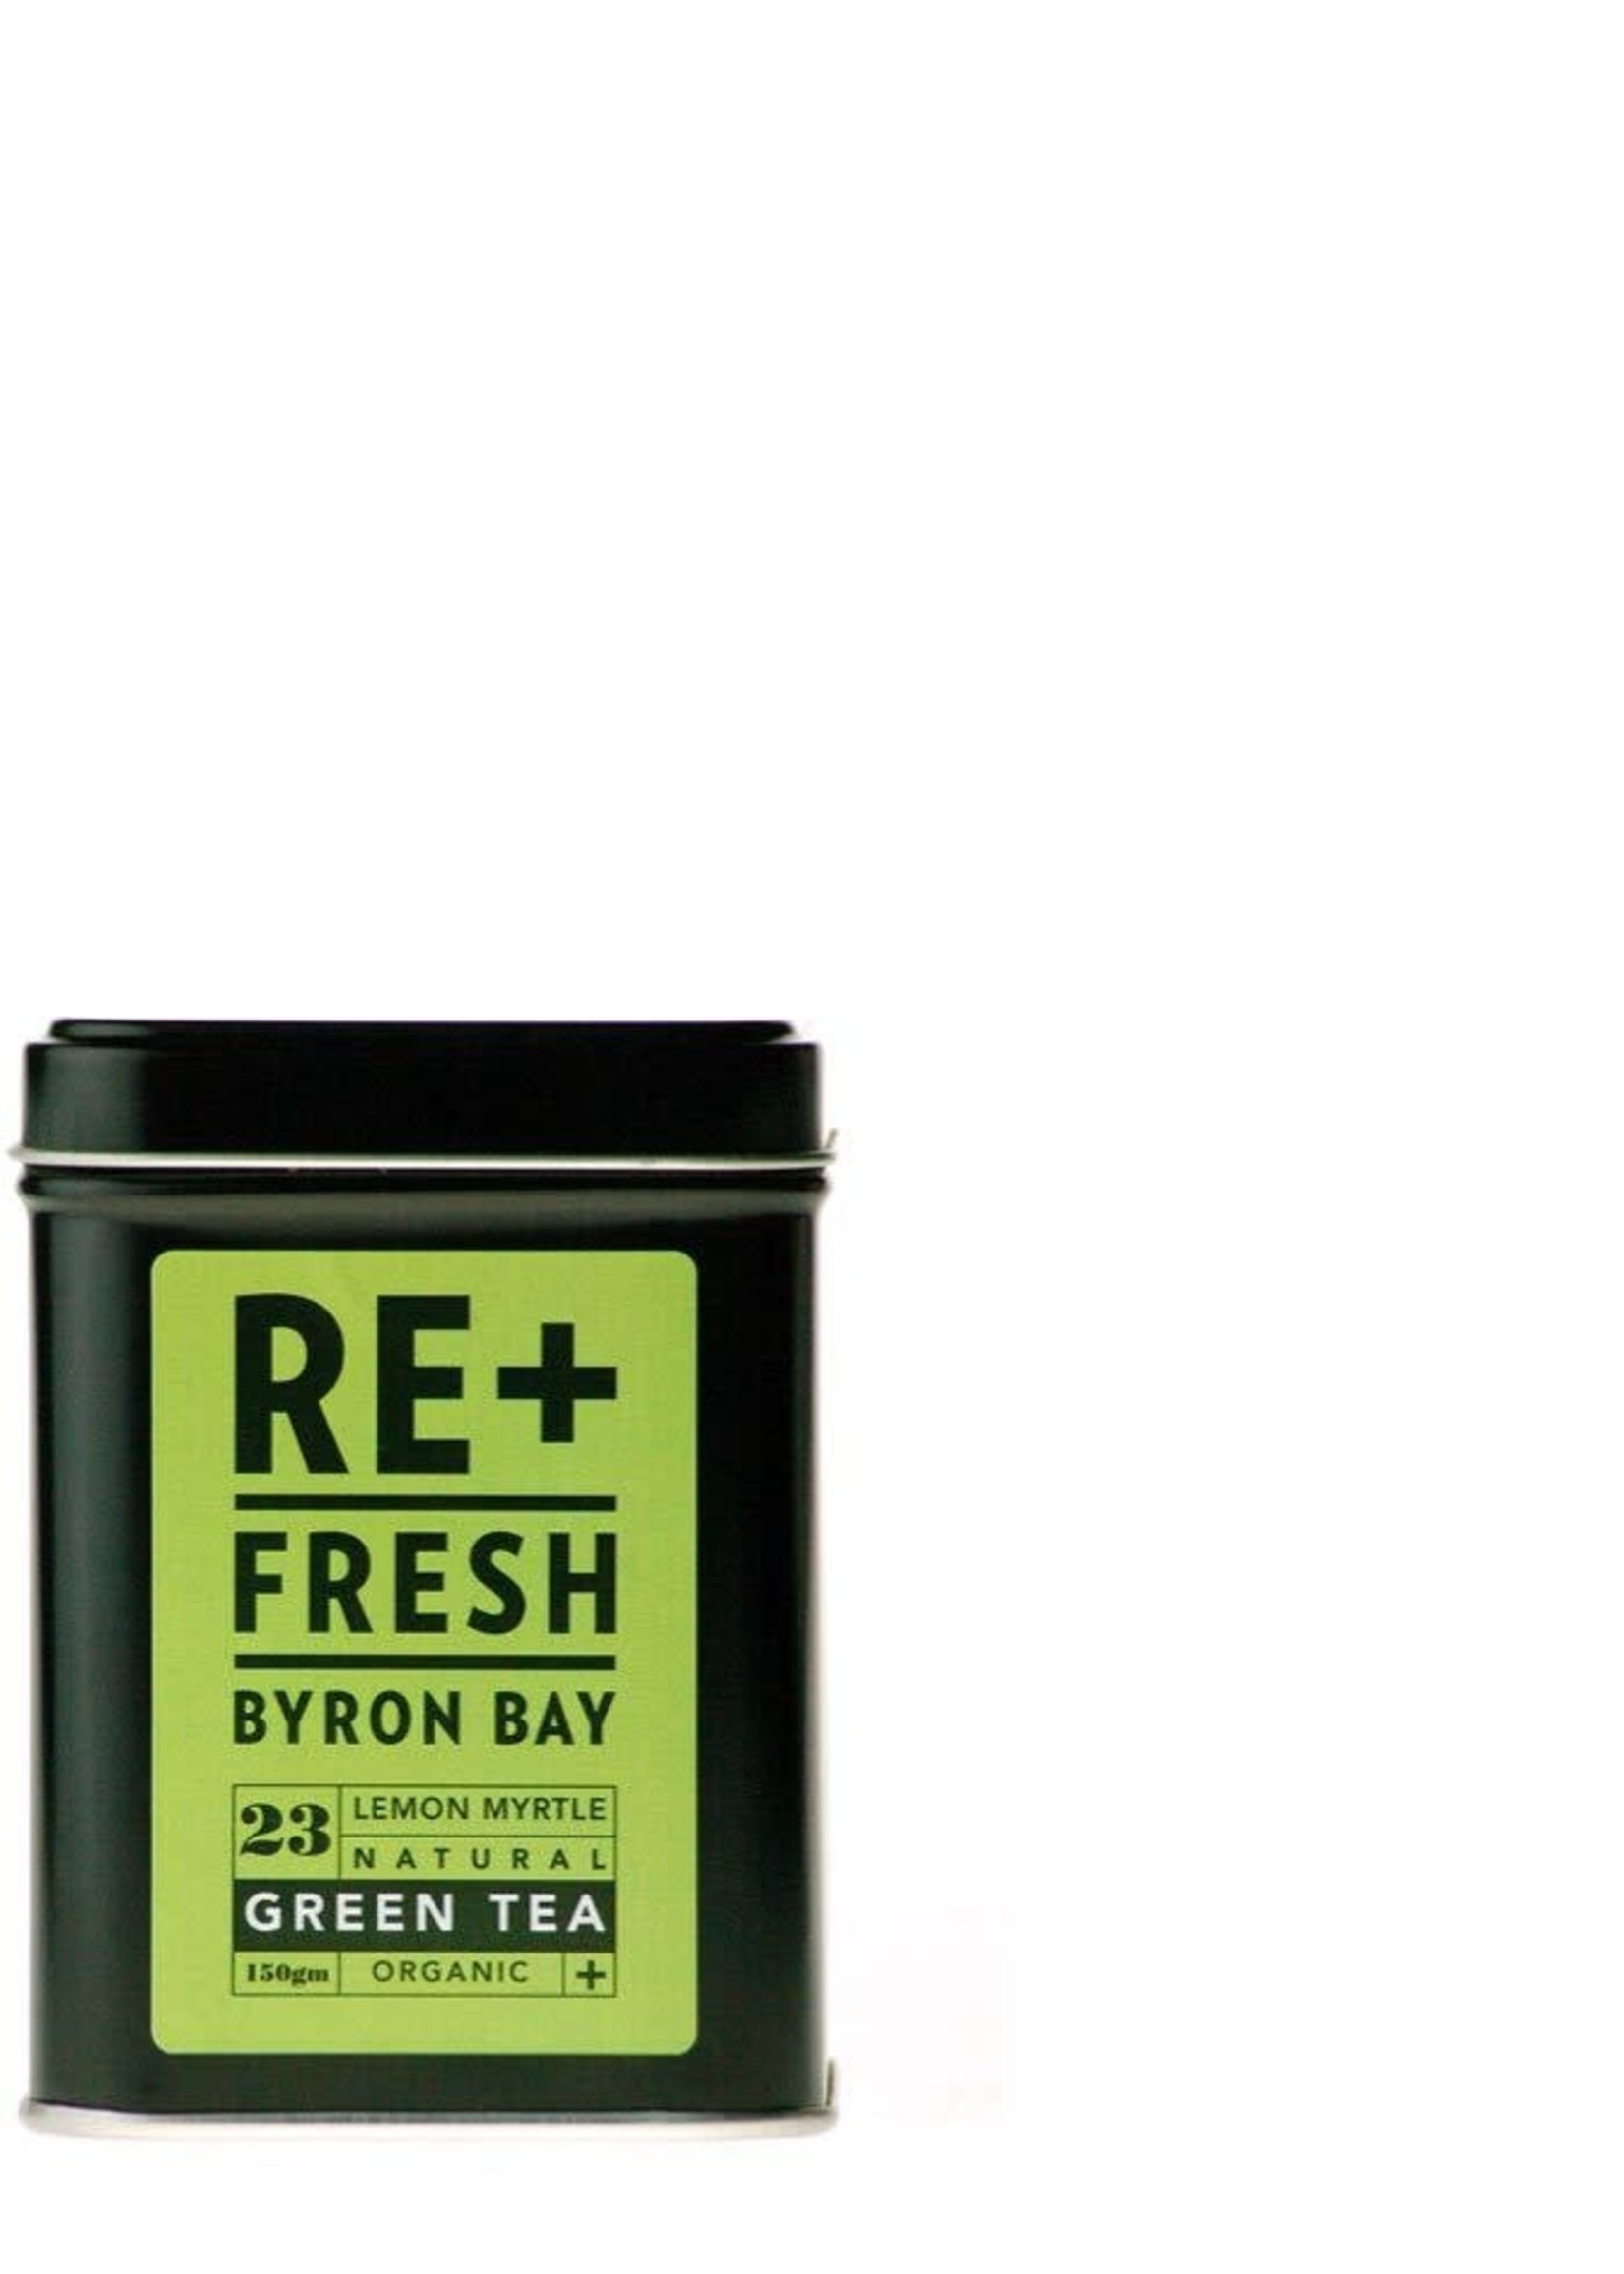 RE+FRESH BRYON BAY RE+FRESH Byron Bay Lemon  Myrtle Green Tea  Organic  150 g